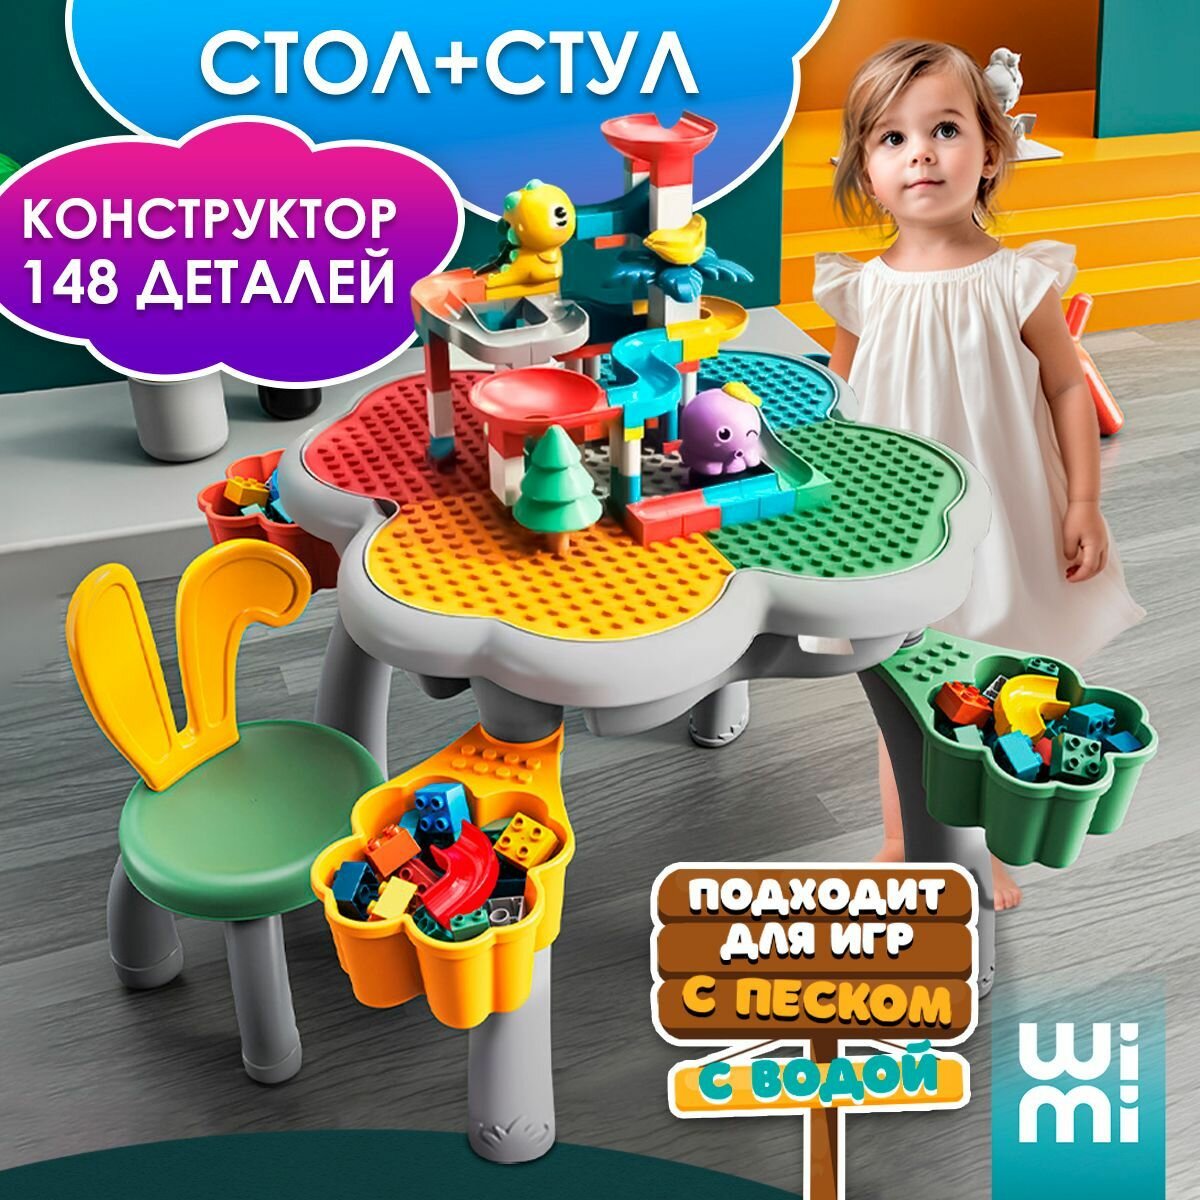 Развивающий детский столик WiMi для конструктора, парта для творчества с контейнером для хранения, стол-трансформер для игр с водой и песком для детей от 2 лет, конструктор в комплекте, 148 деталей